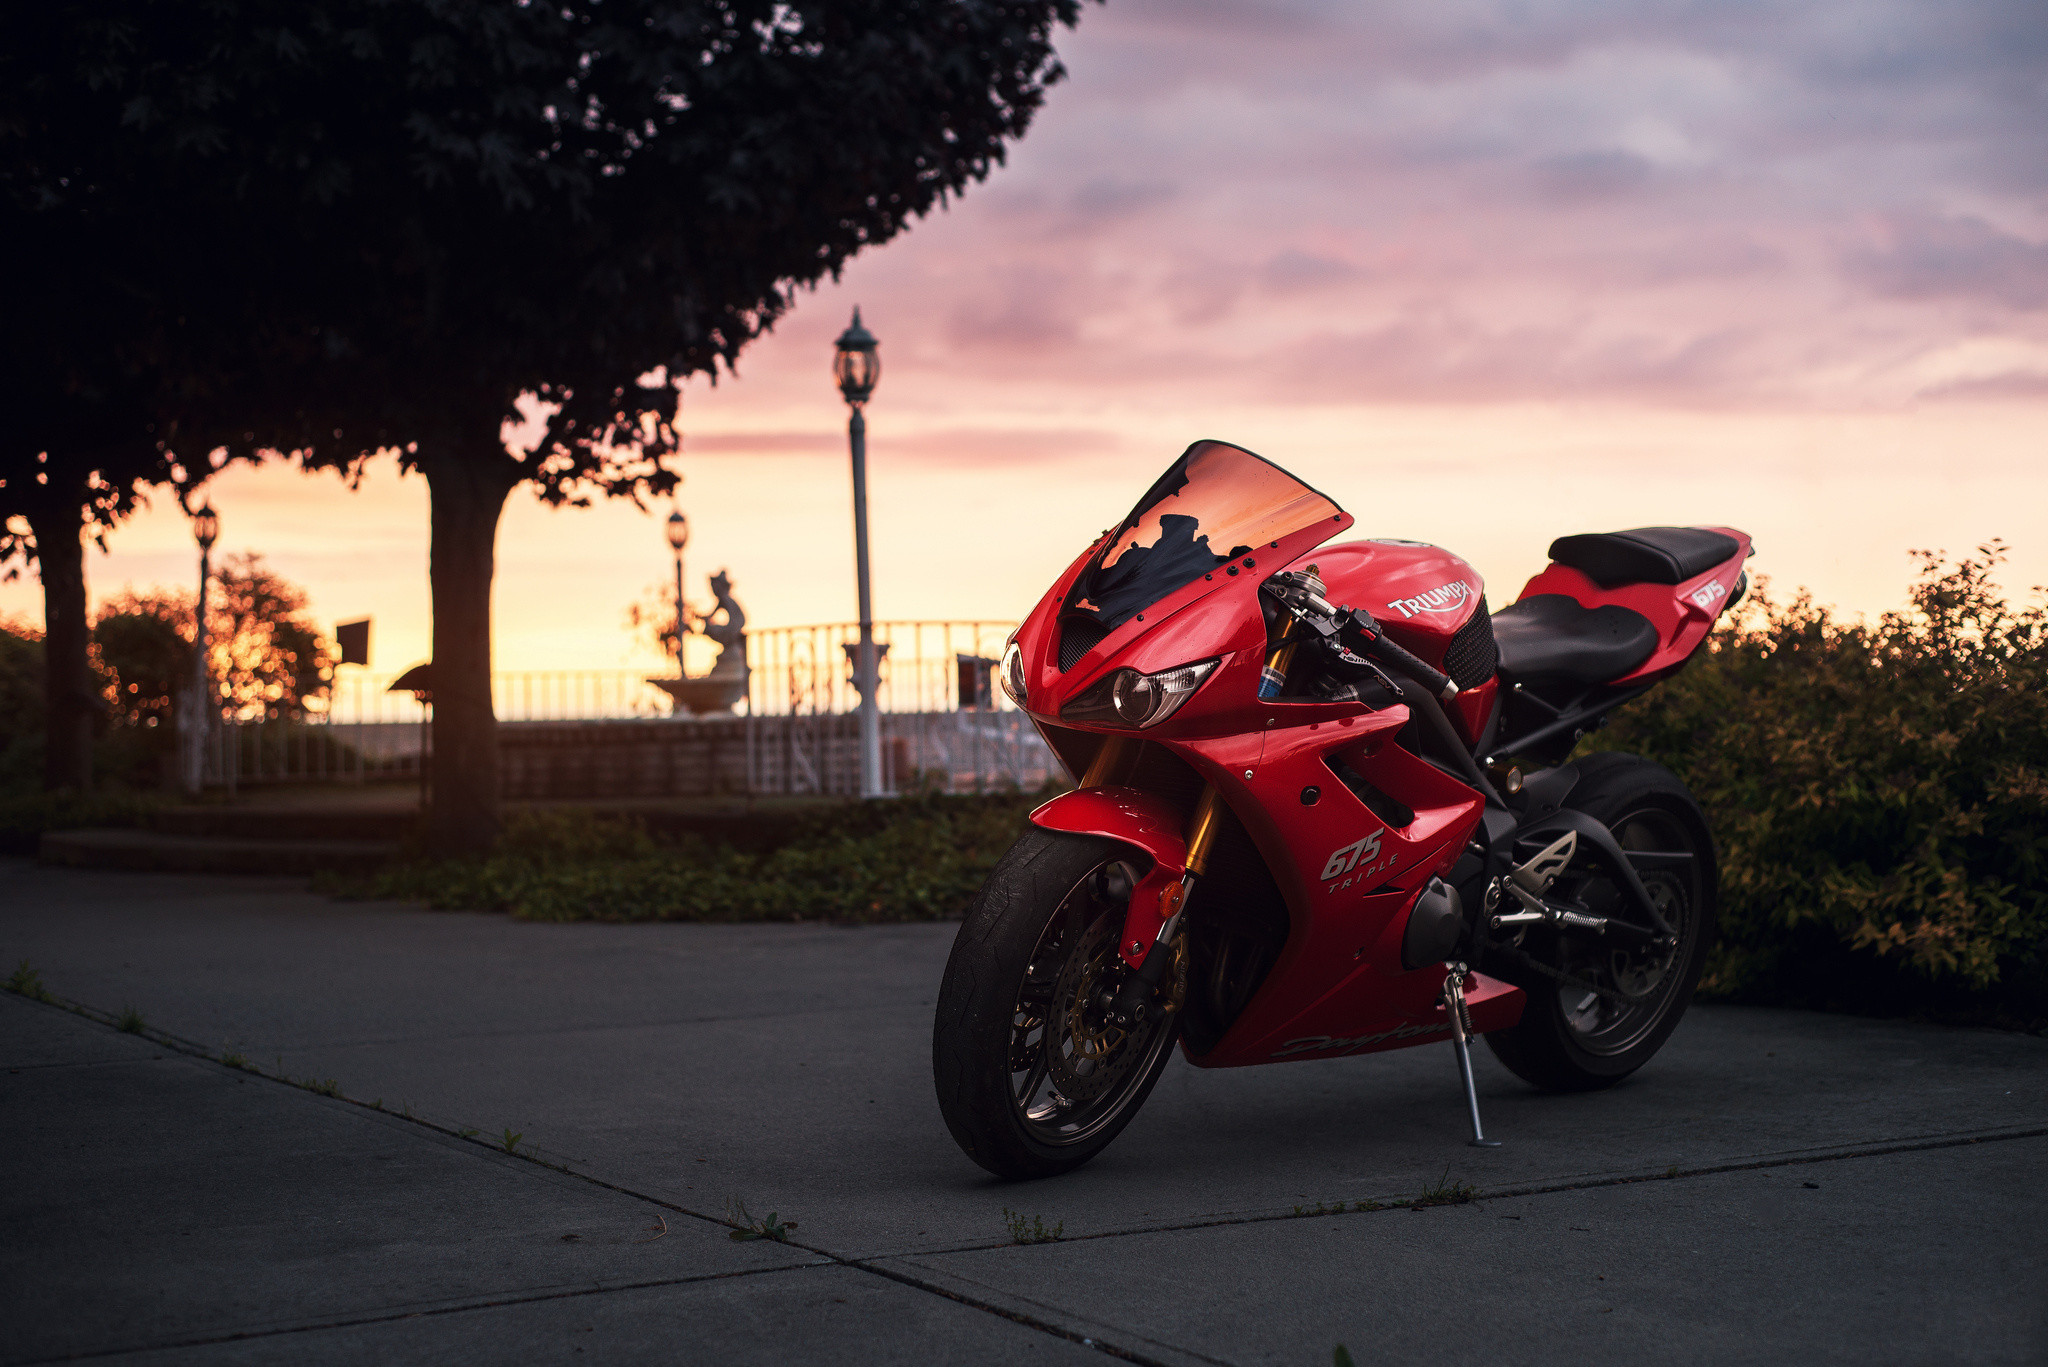 2048x1367 Triumph, sportbike, twilight, daytona 675, red, sky, motorcycle